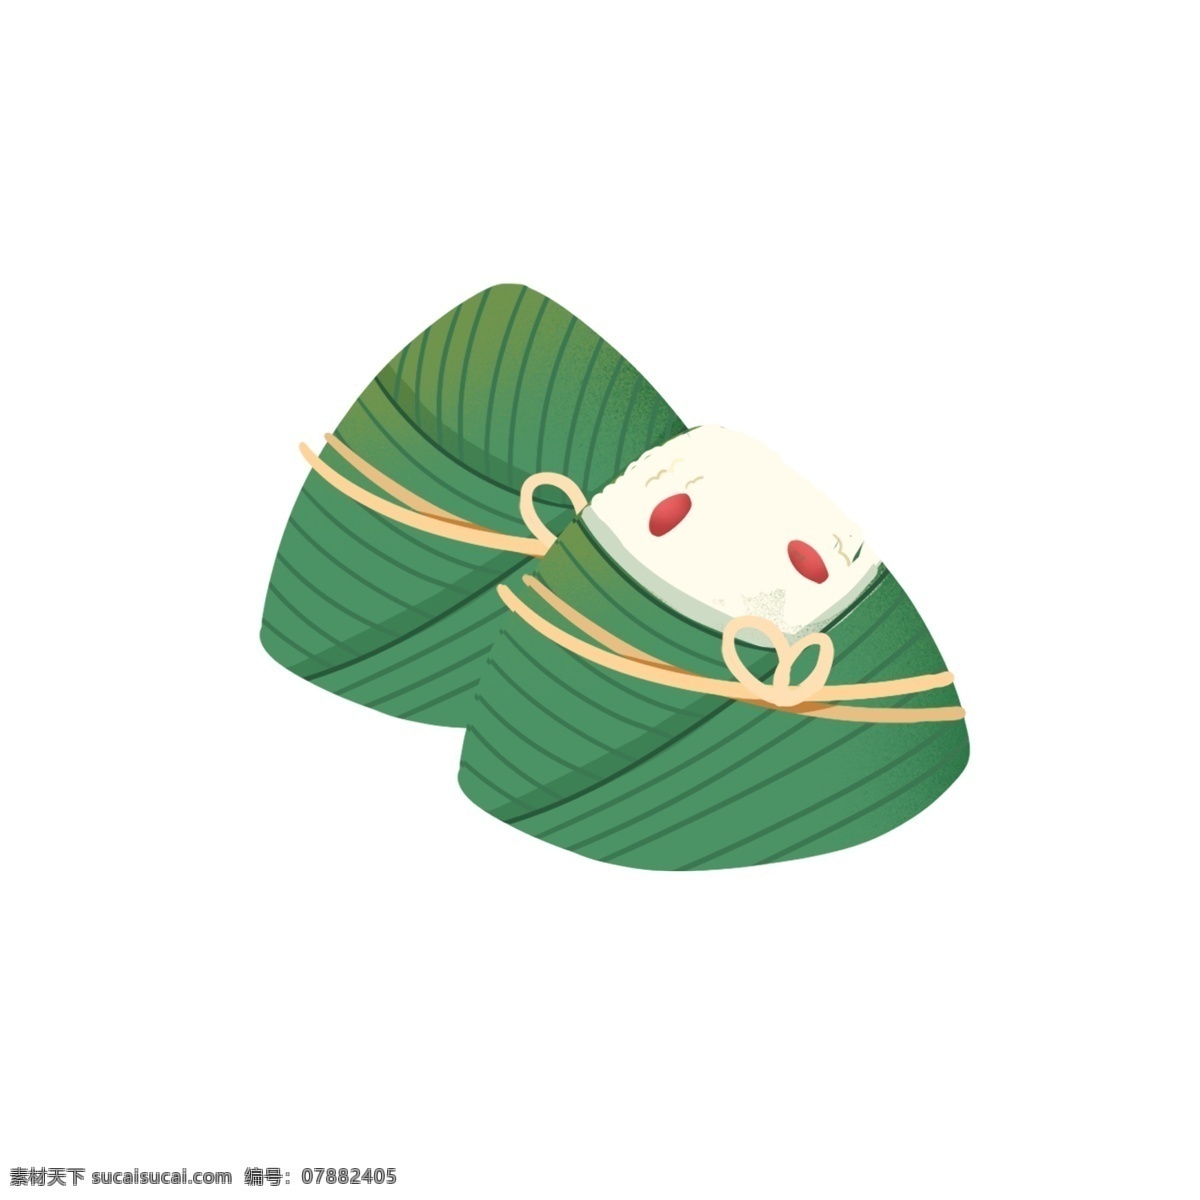 绿色 粽子 图案 元素 可爱 美食 传统 中国风 端午节元素 元素设计 简约 创意元素 手绘元素